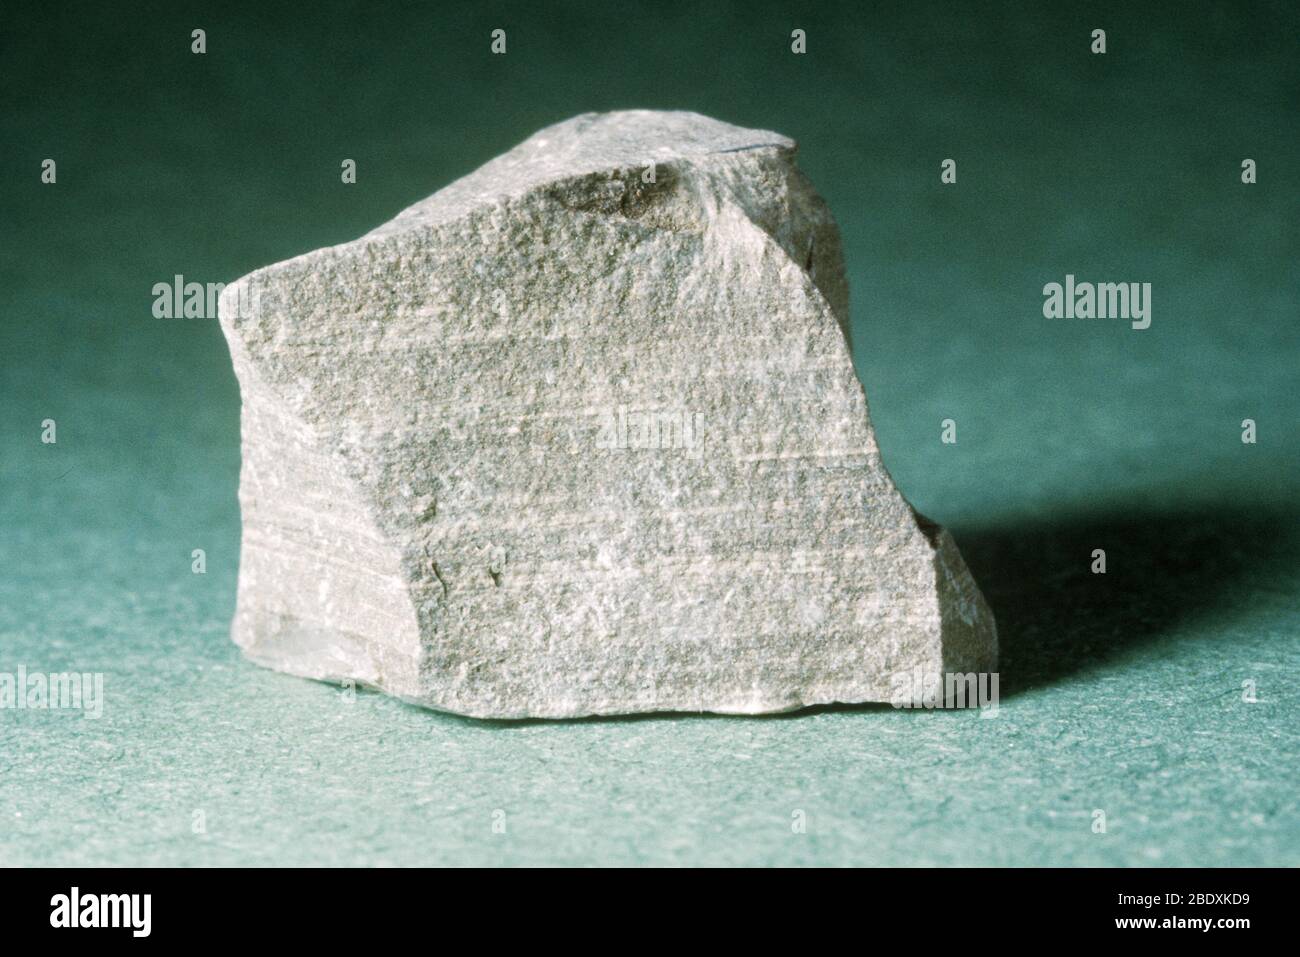 Schiste bitumineux, roche sédimentaire à grain fin contenant des traces significatives de kerogène (un mélange solide de composés chimiques organiques). Banque D'Images